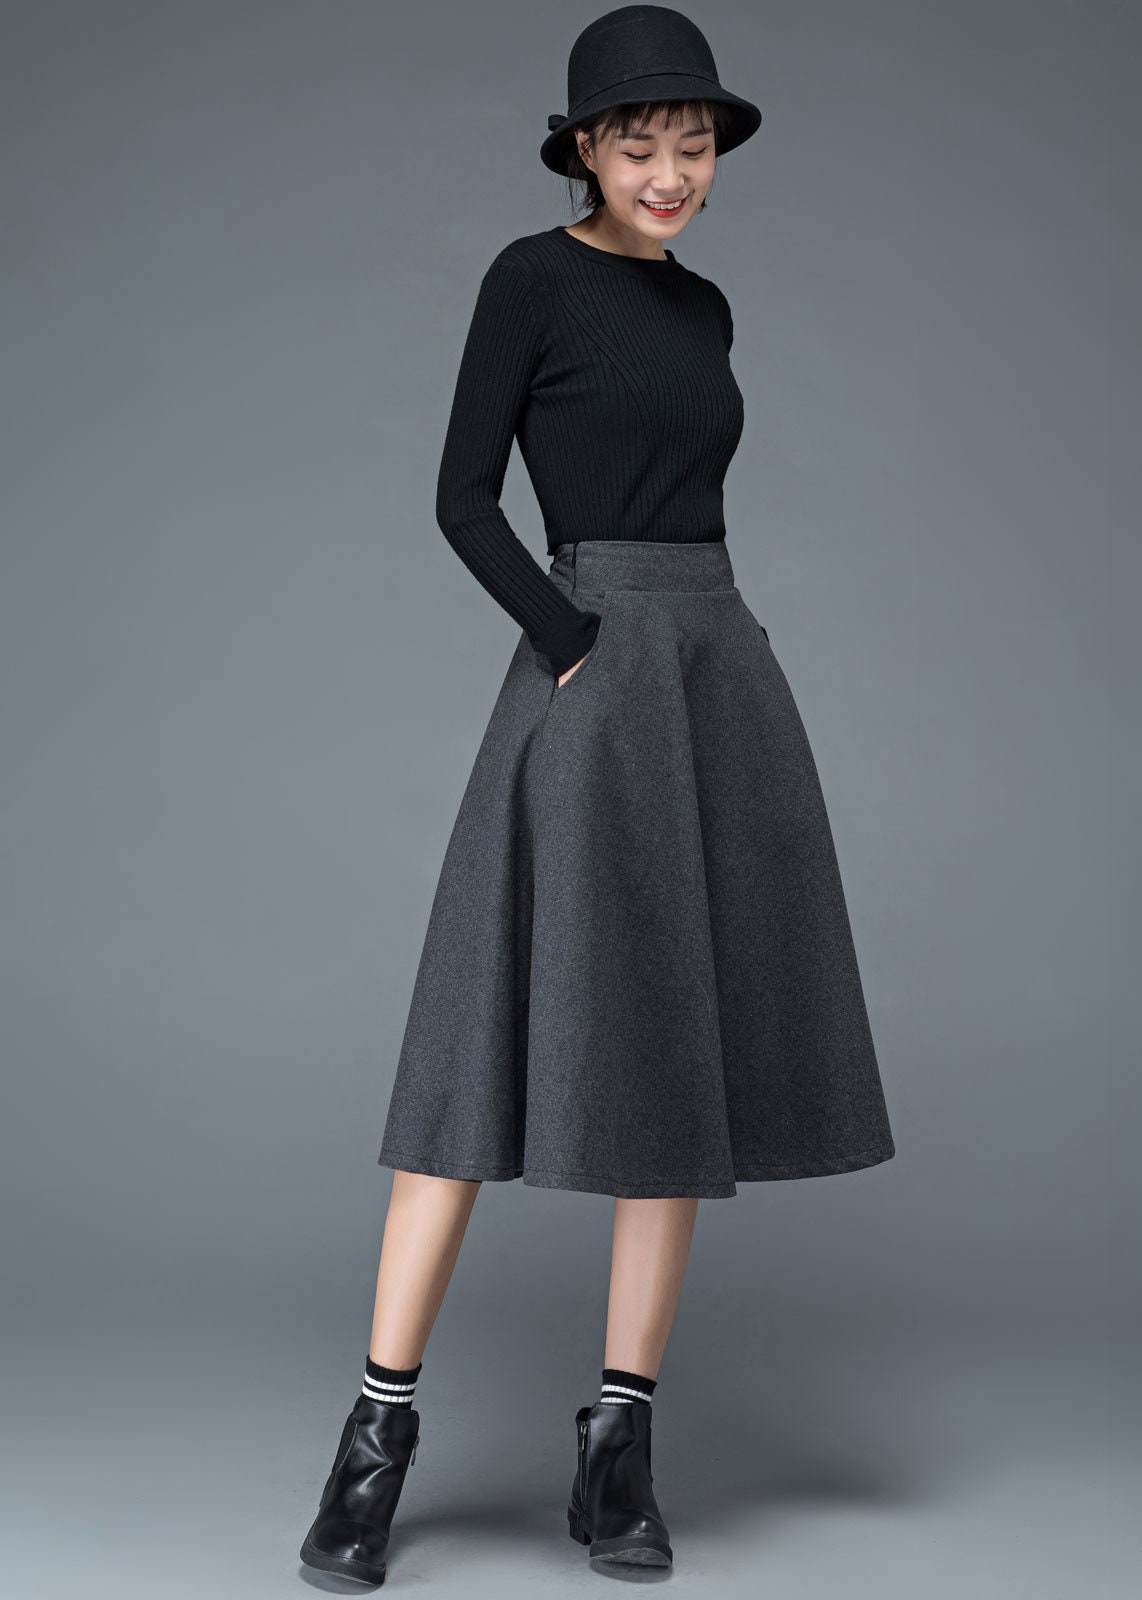 Wool Skirt, Wool Midi Skirt, Flare Skirt, Swing A Line Skirt, Women Skirts  Winter, Elastic Waist Skirt, Gray Wool Skirt, Ylityle C1193 